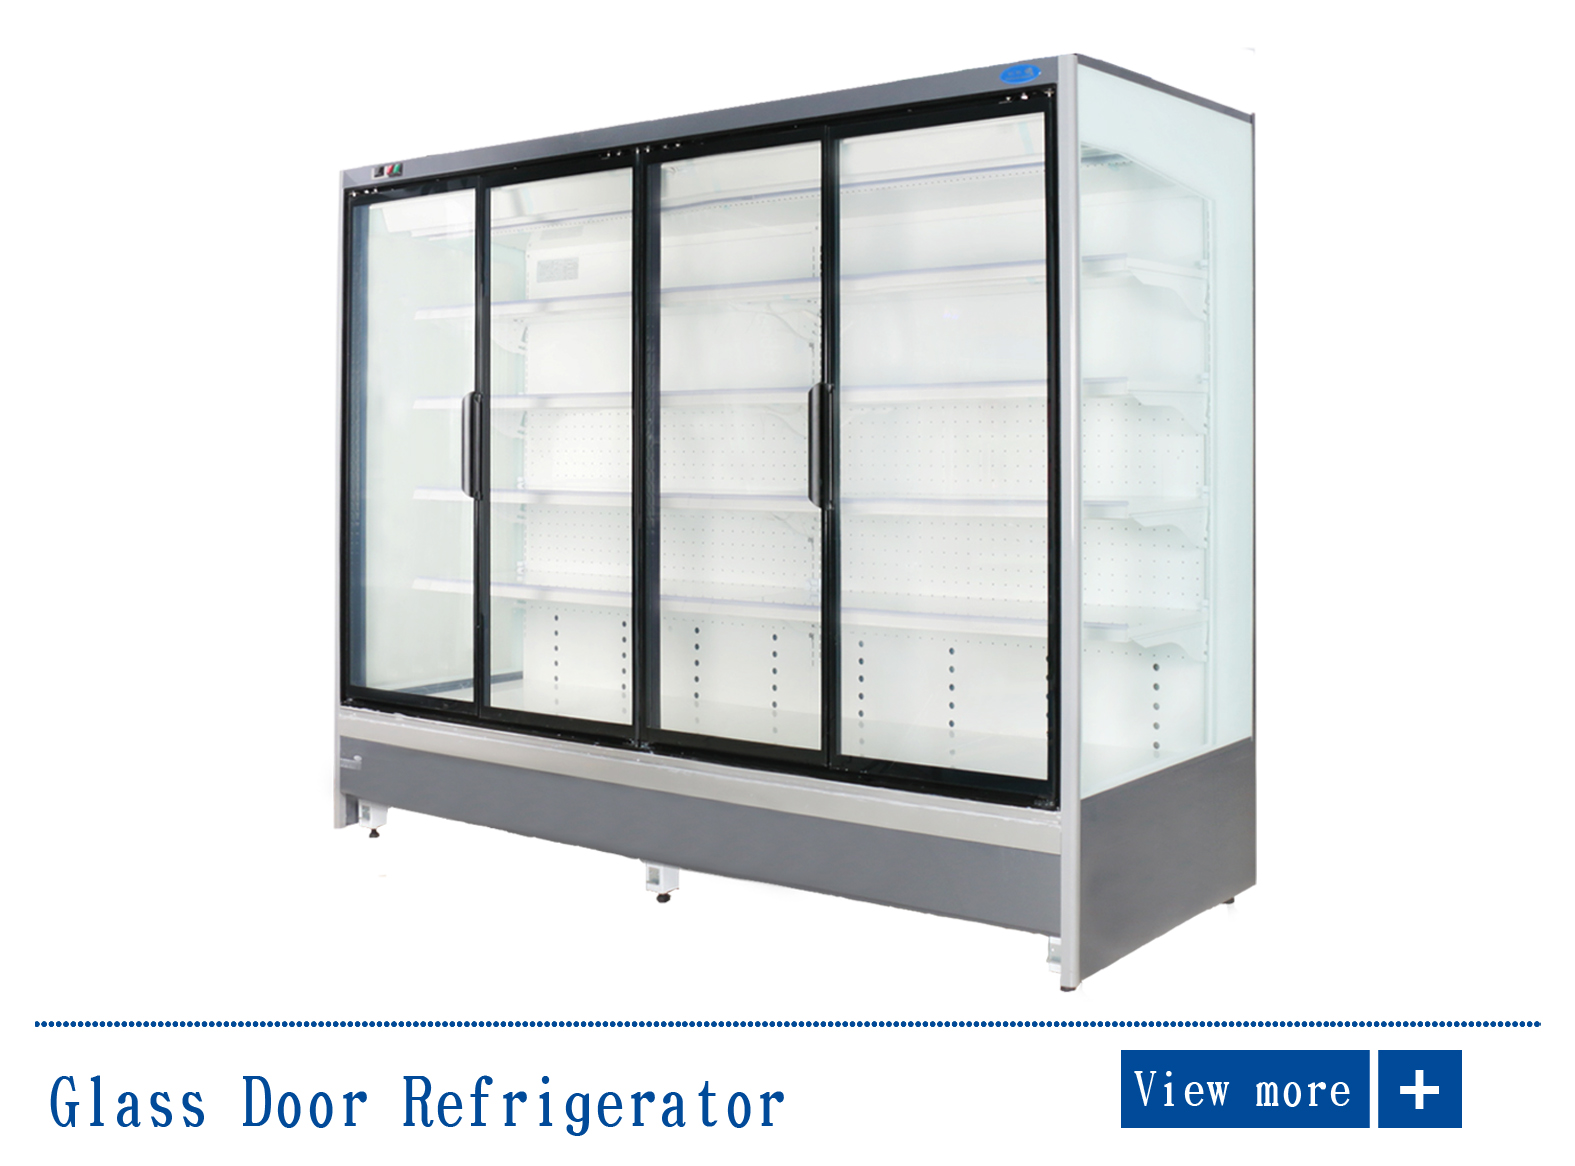 Glass Door Freezer